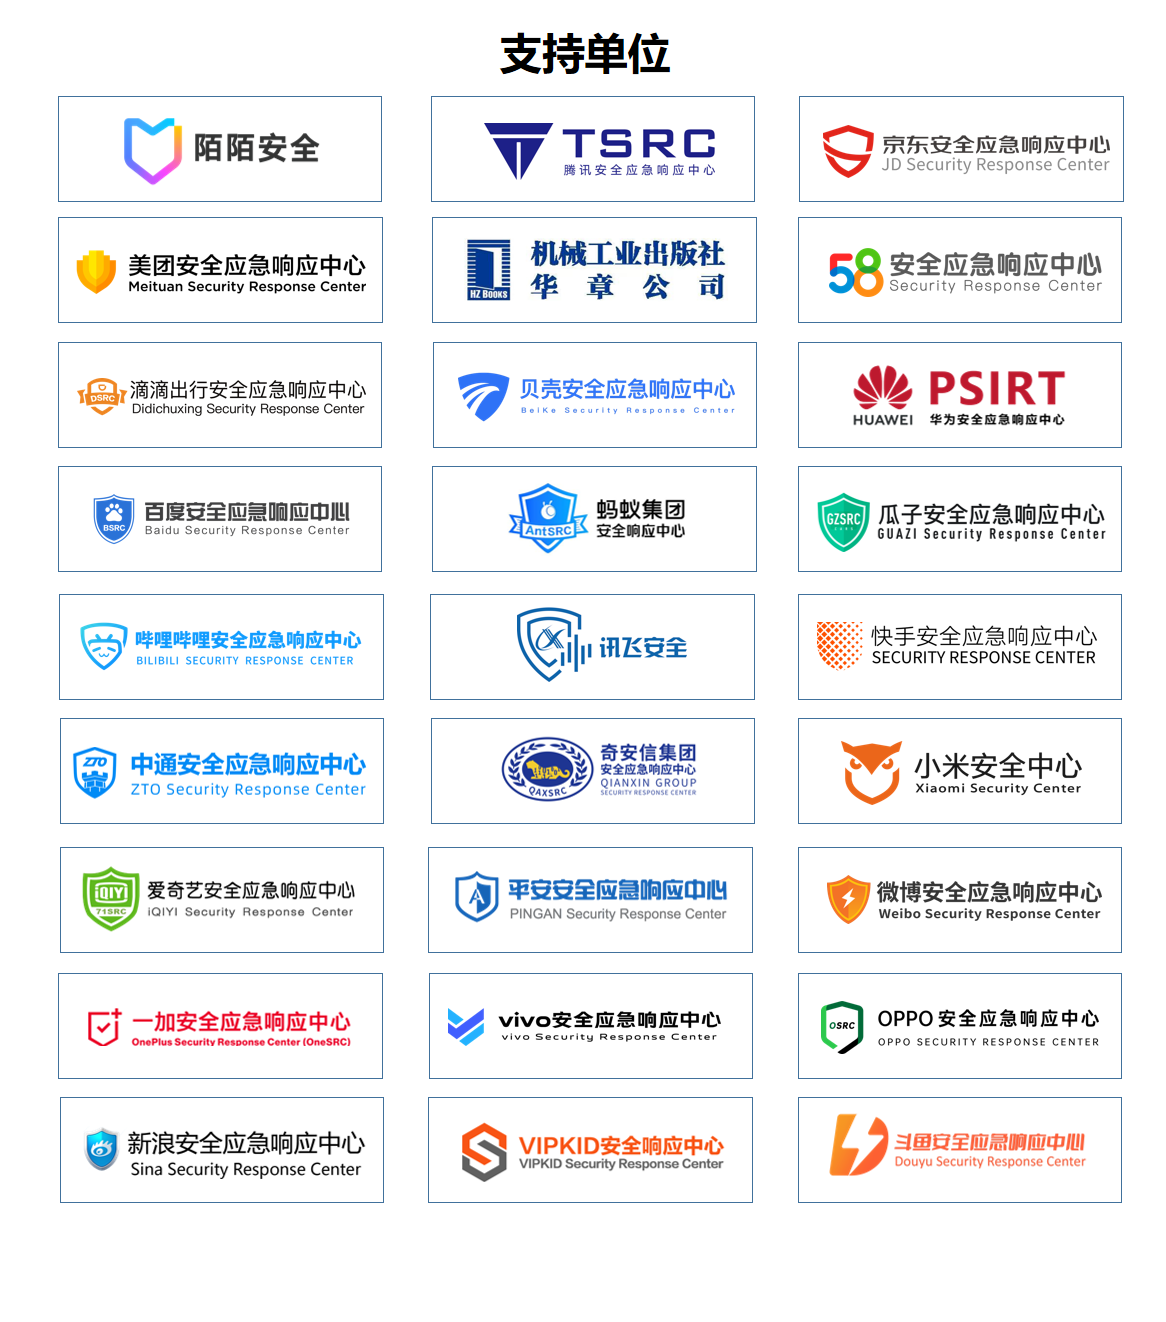 最终议程！EISS-2021企业信息安全峰会之北京站 5.14（周五）插图9